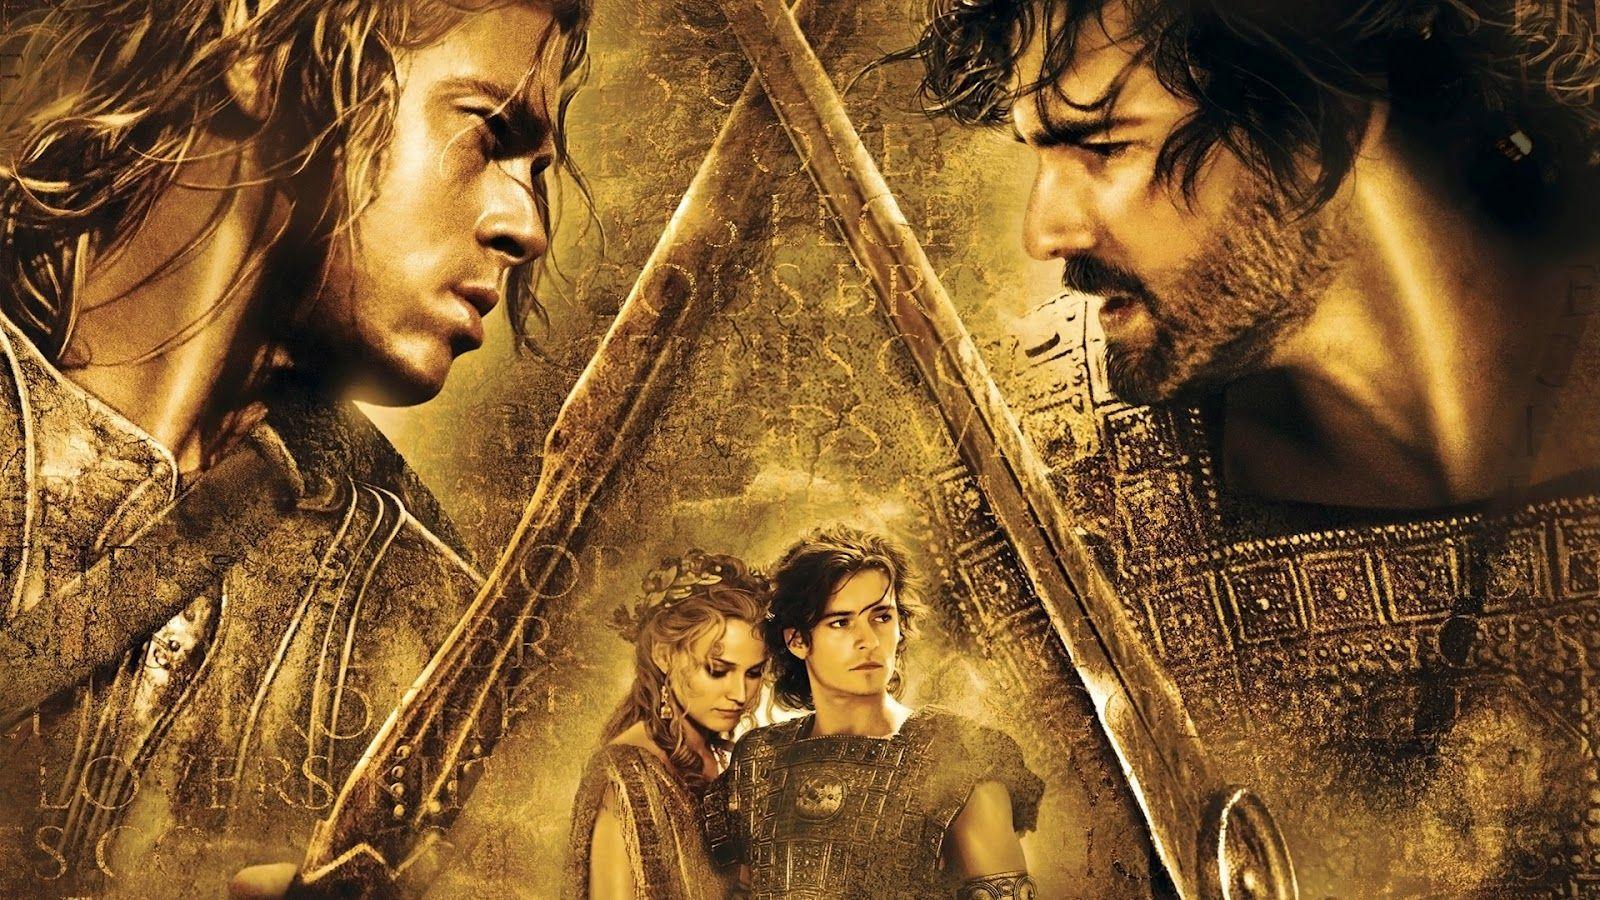 Brad Pitt Achilles Troy. troy brad bitt Troy Movie Wallpaper